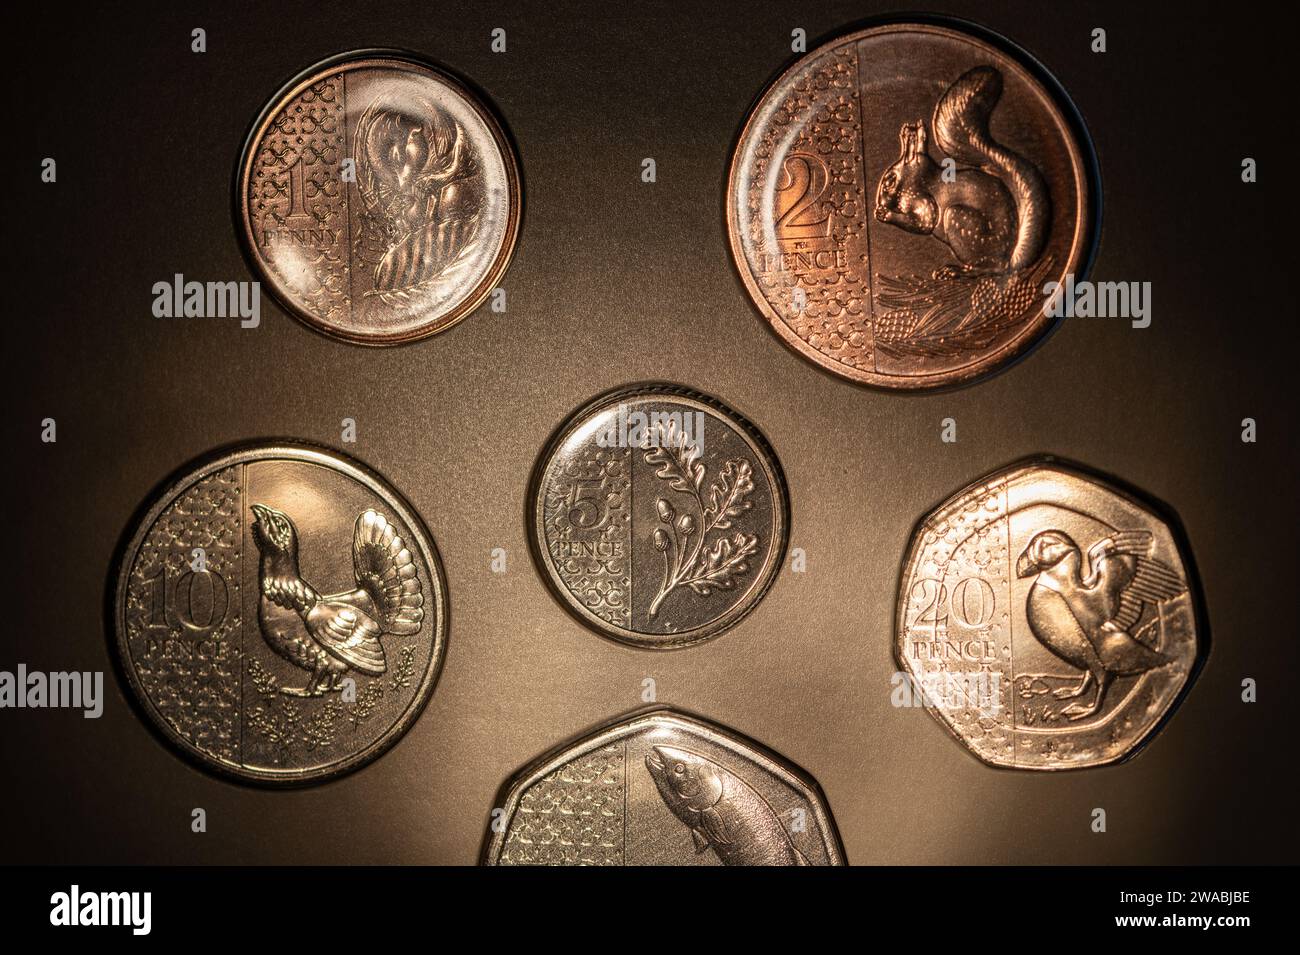 La zecca reale, re Carlo III 2023 Regno Unito insieme di monete non circolanti, tema della conservazione, 75 ° compleanno di sua Maestà e incoronazione. Foto Stock